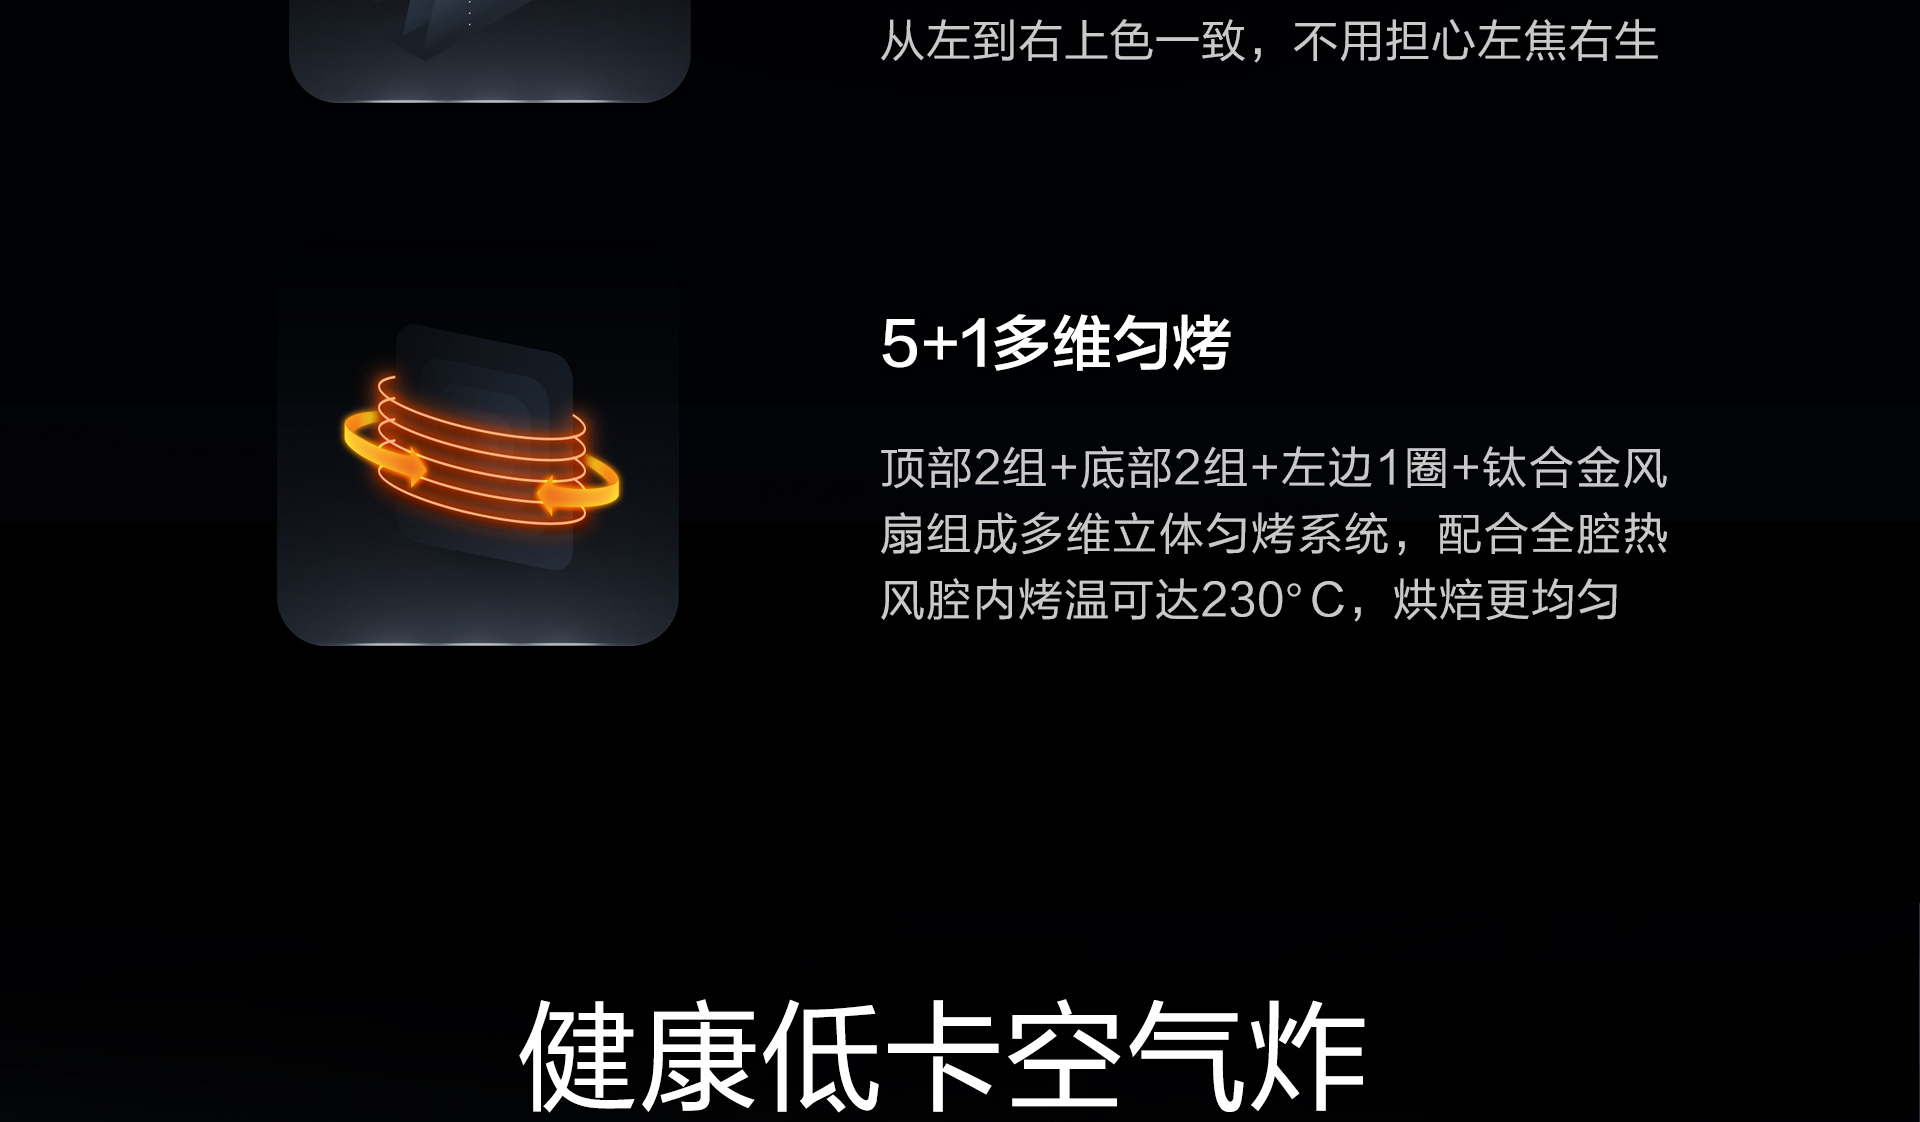 皇冠球网(中国)有限公司产品上新需求单-光焱洗消一体机S1-Plus_17.jpg